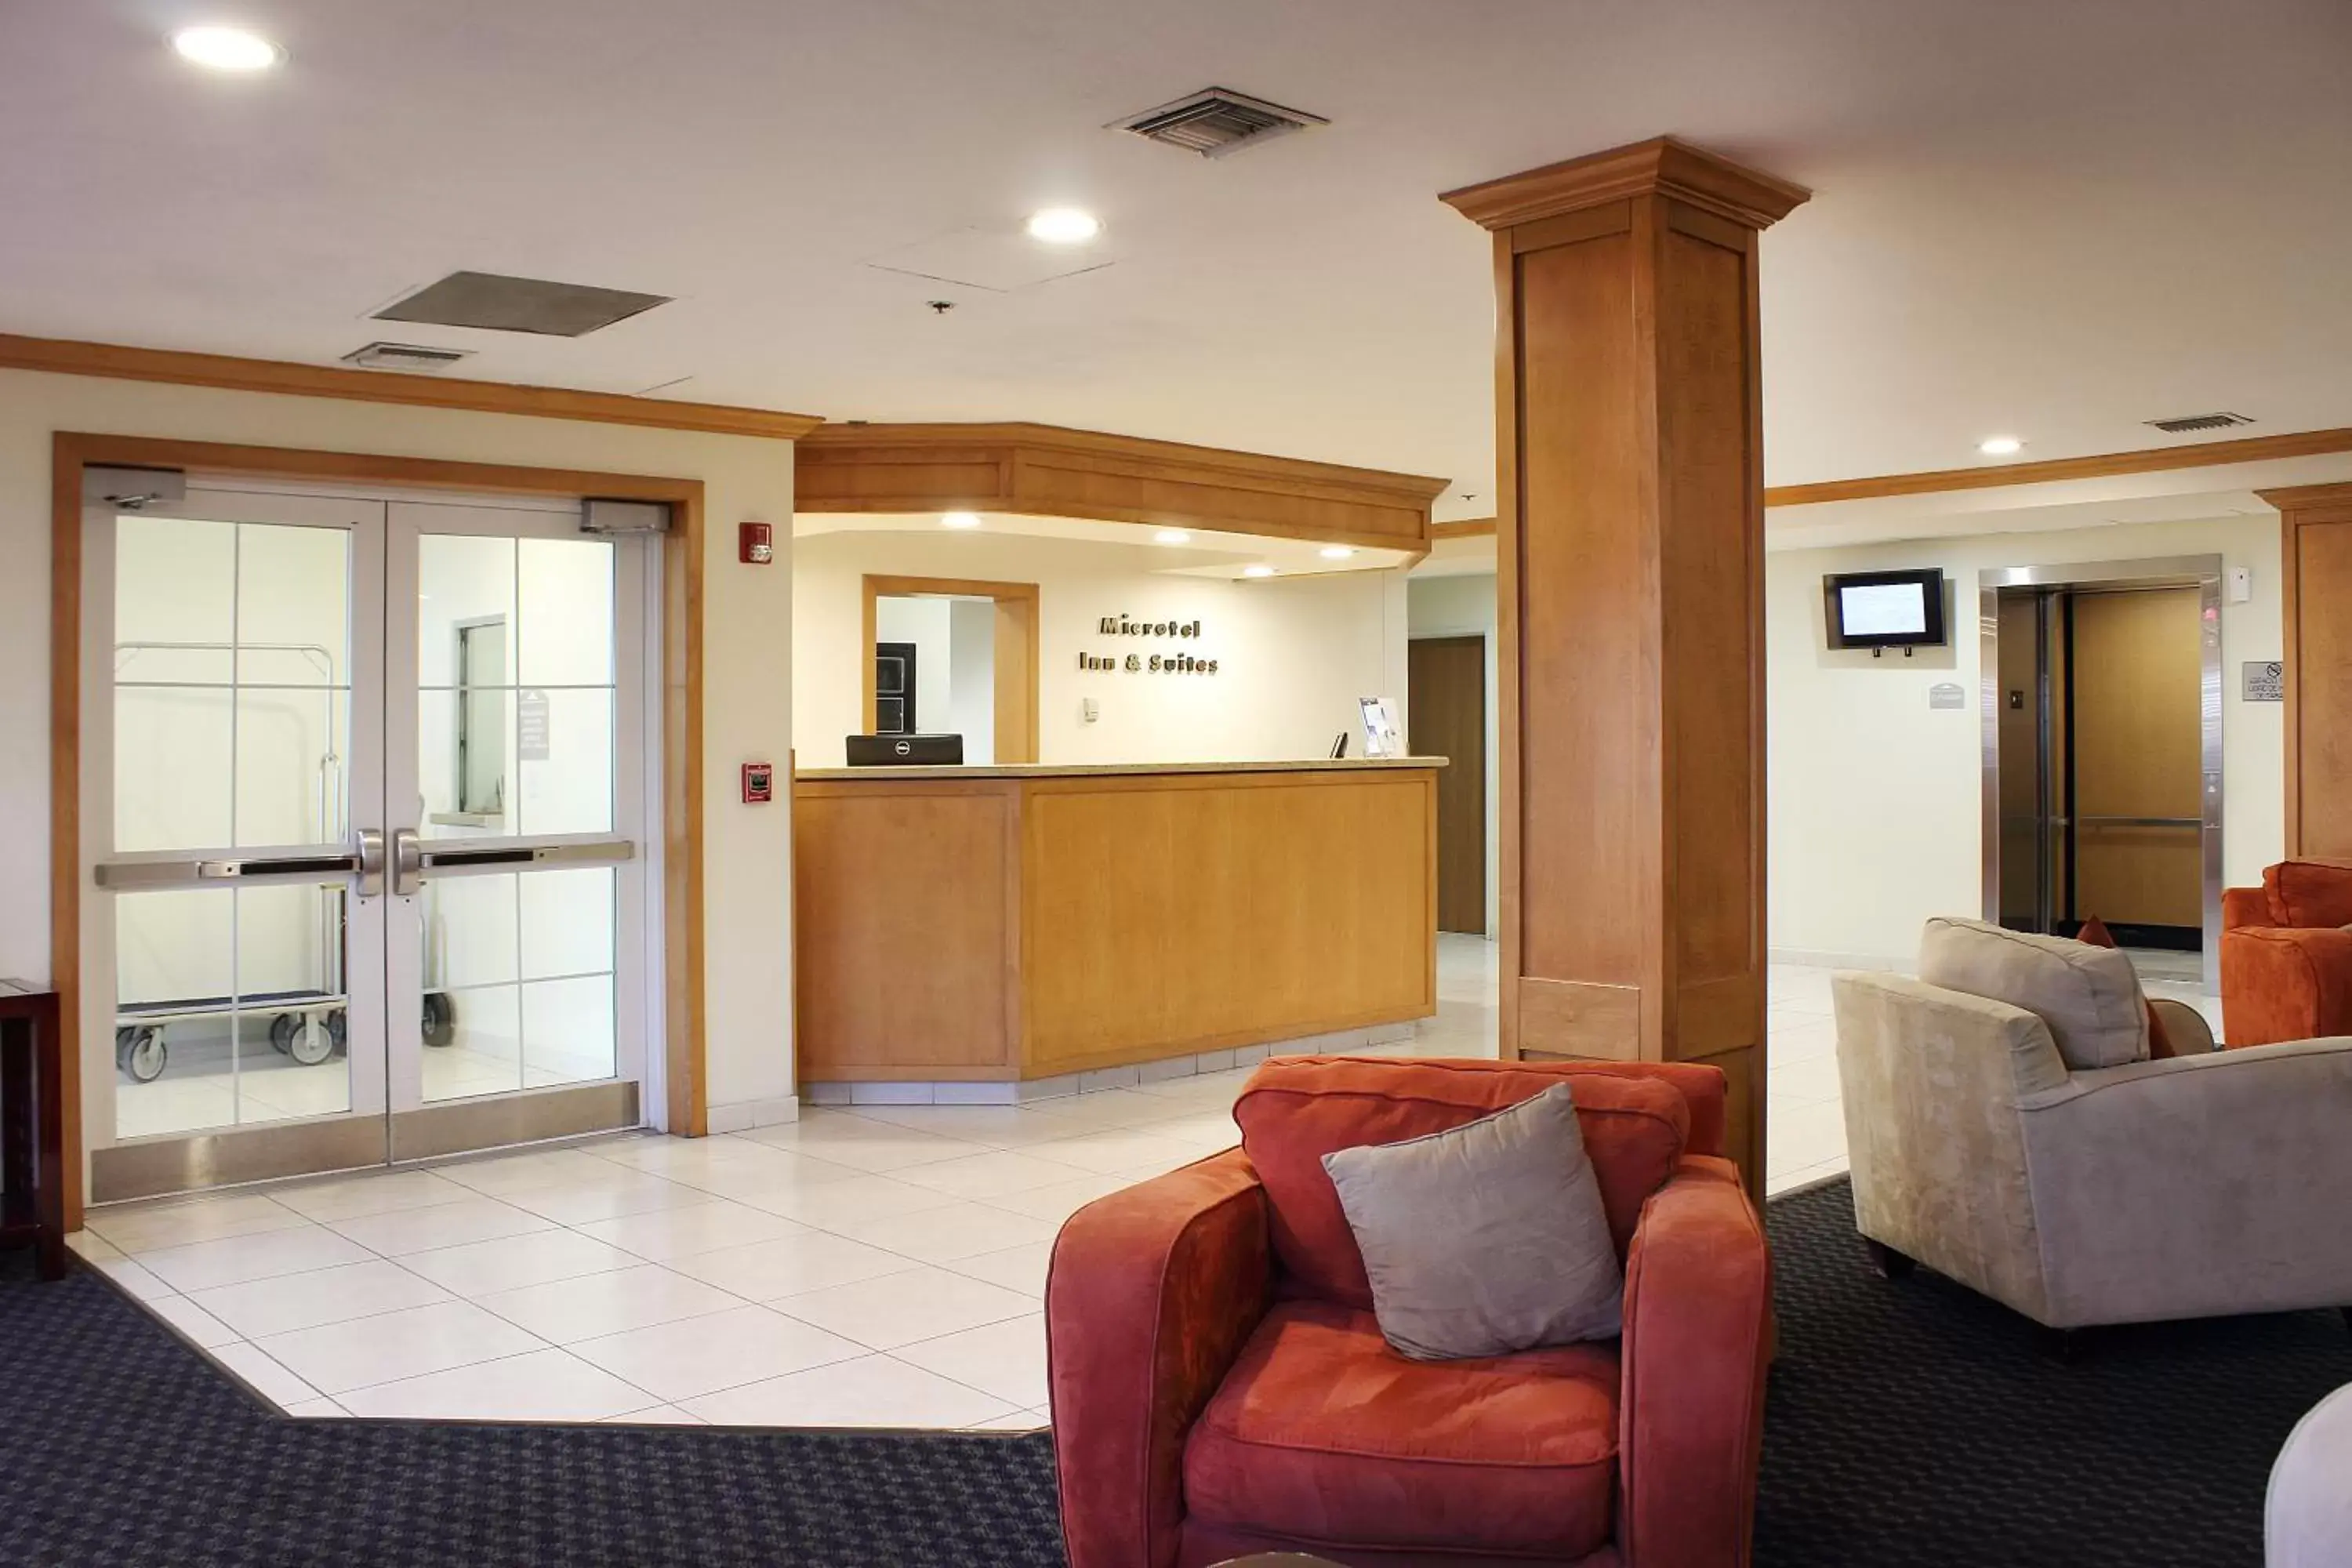 Lobby or reception, Lobby/Reception in Microtel Inn & Suites by Wyndham Culiacán